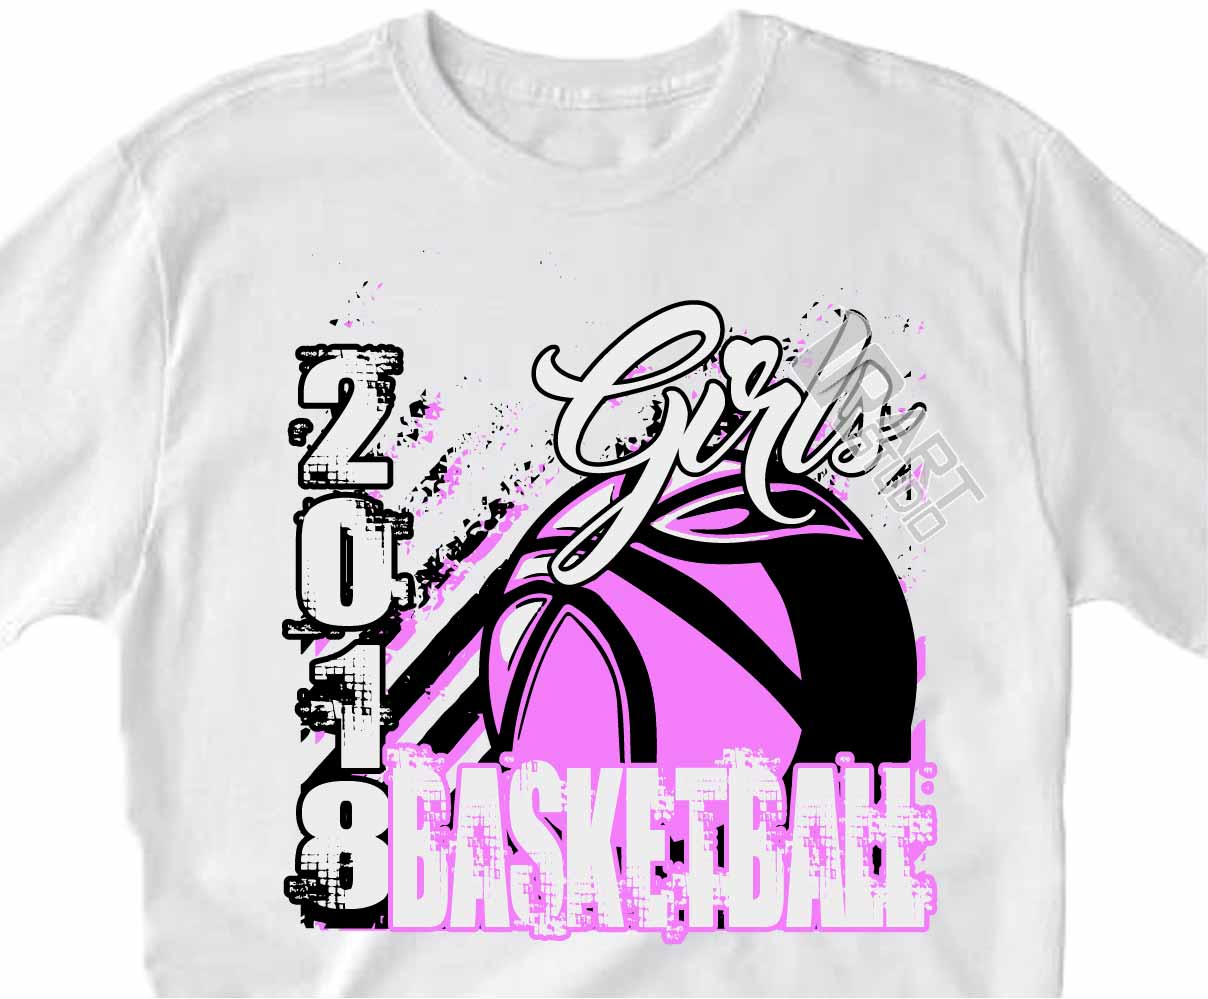 girls basketball t shirt ideas